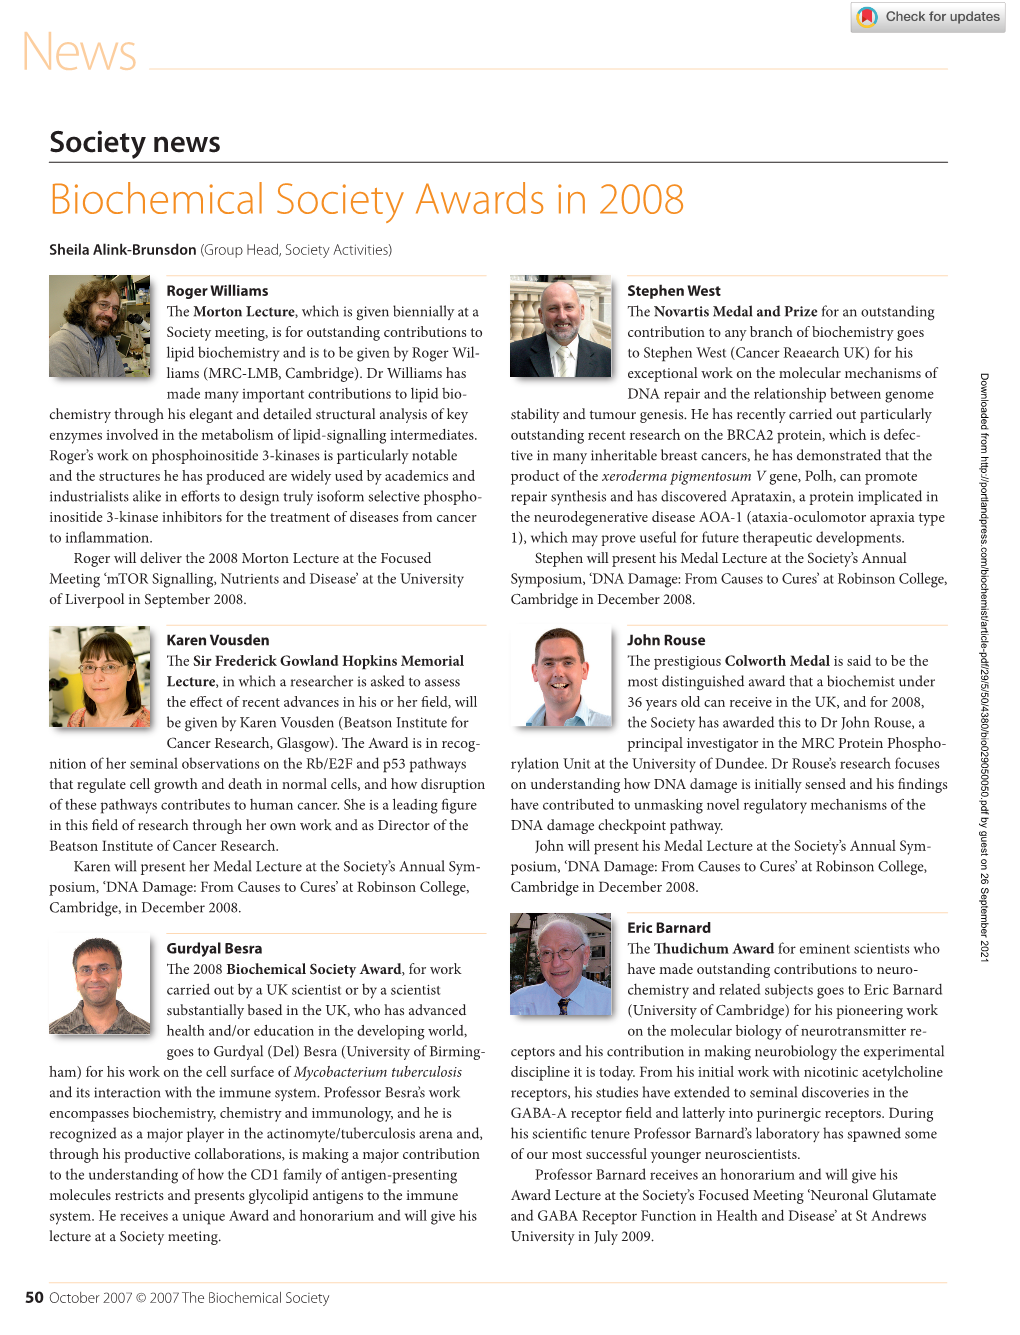 Biochemical Society Awards in 2008